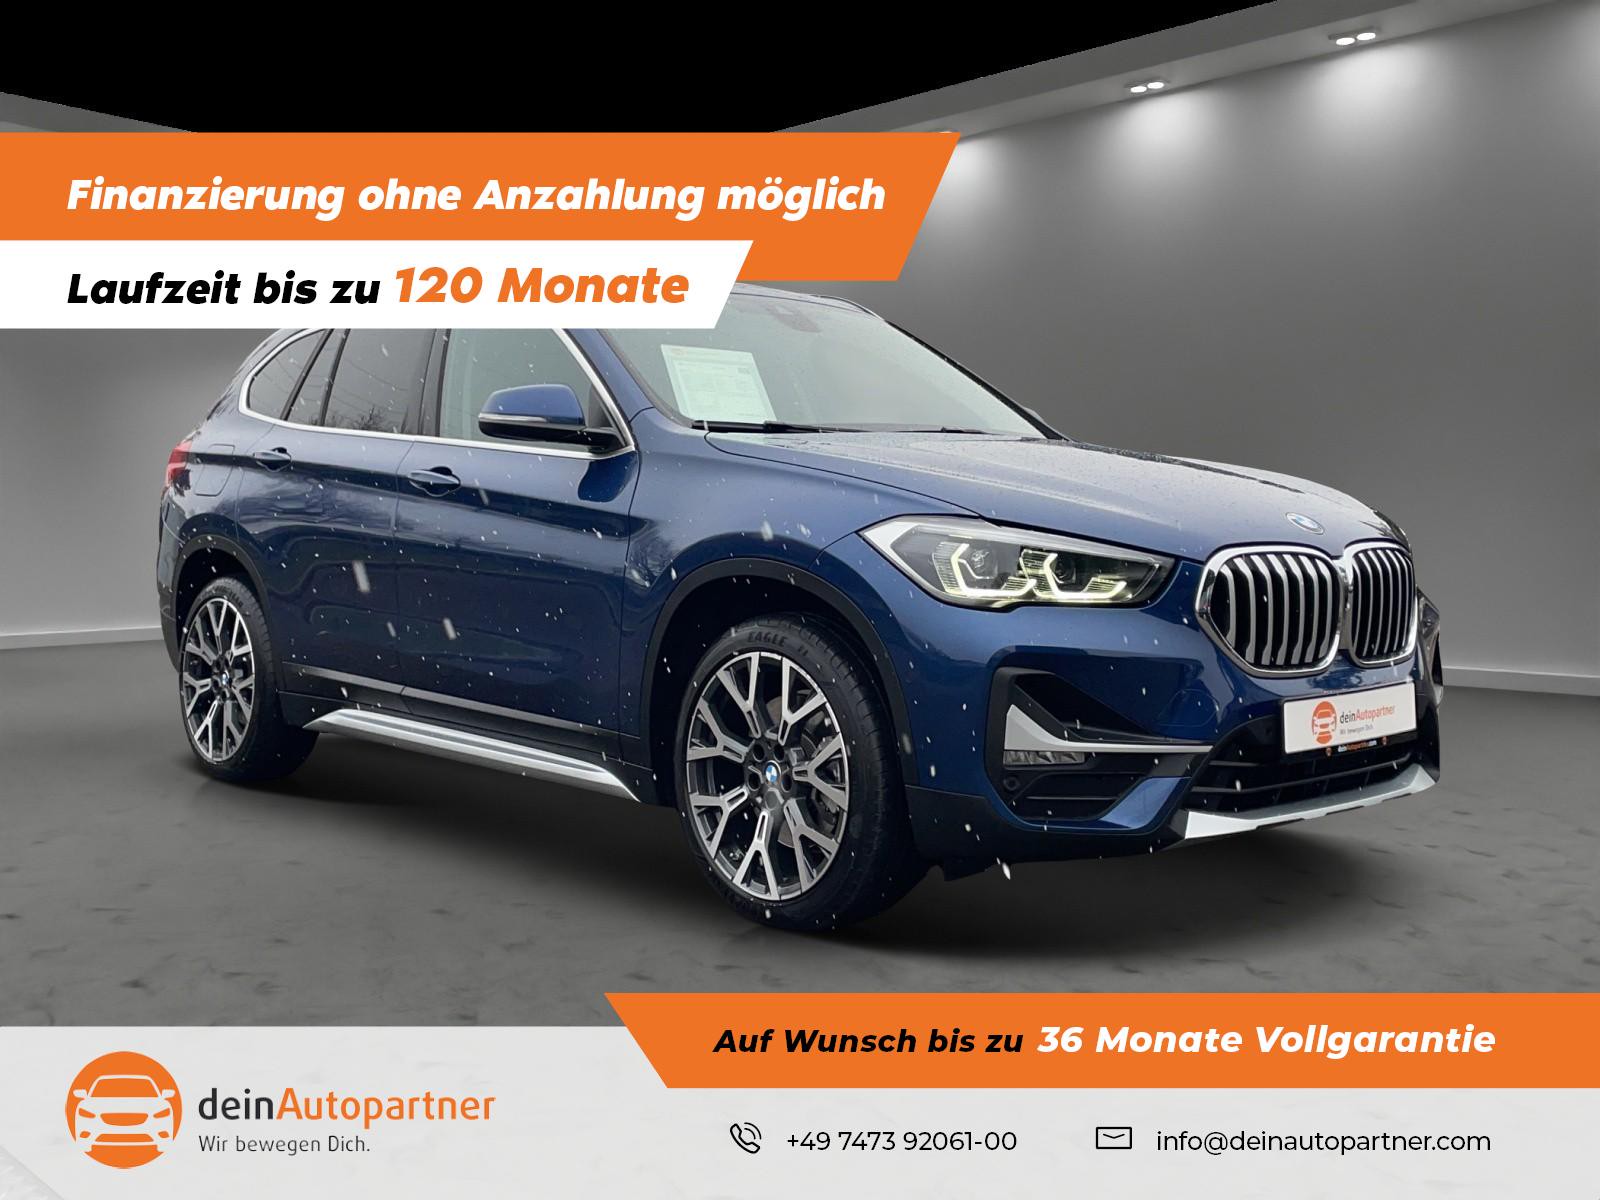 BMW X1 xDrive 20 d xLine gebraucht kaufen in Mössingen Preis 33900 eur - Int .Nr.: 1754 VERKAUFT